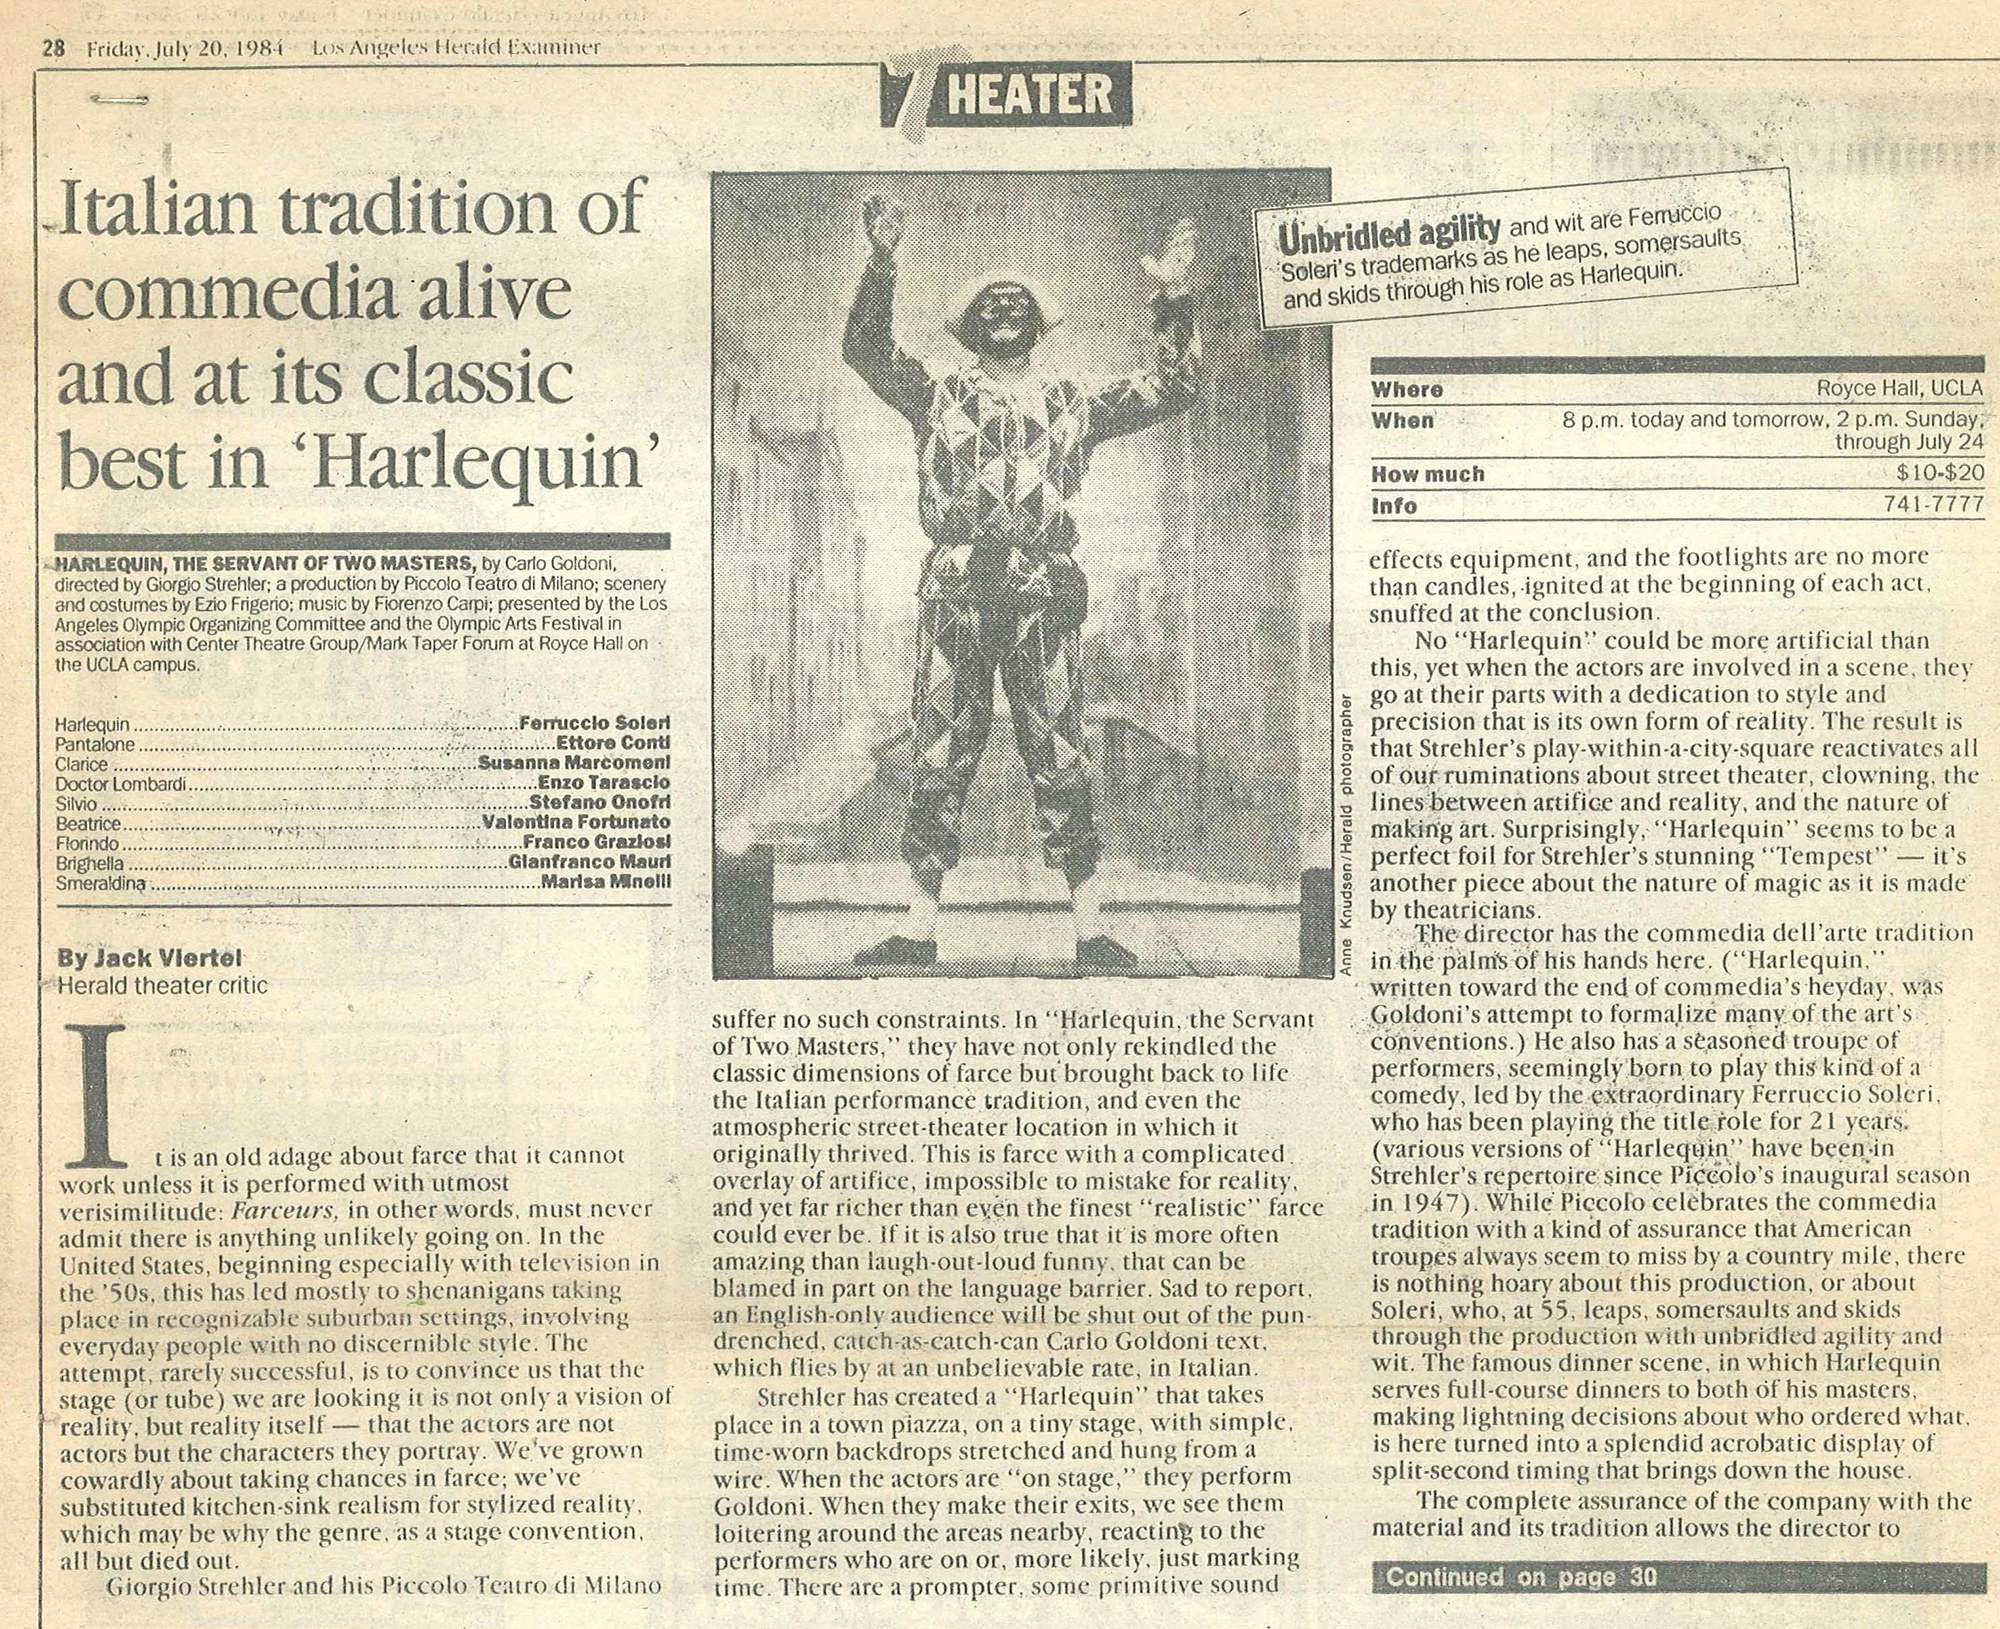 “Los Angeles Herald Examiner”, 20 luglio 1984 - Archivio Piccolo Teatro di Milano